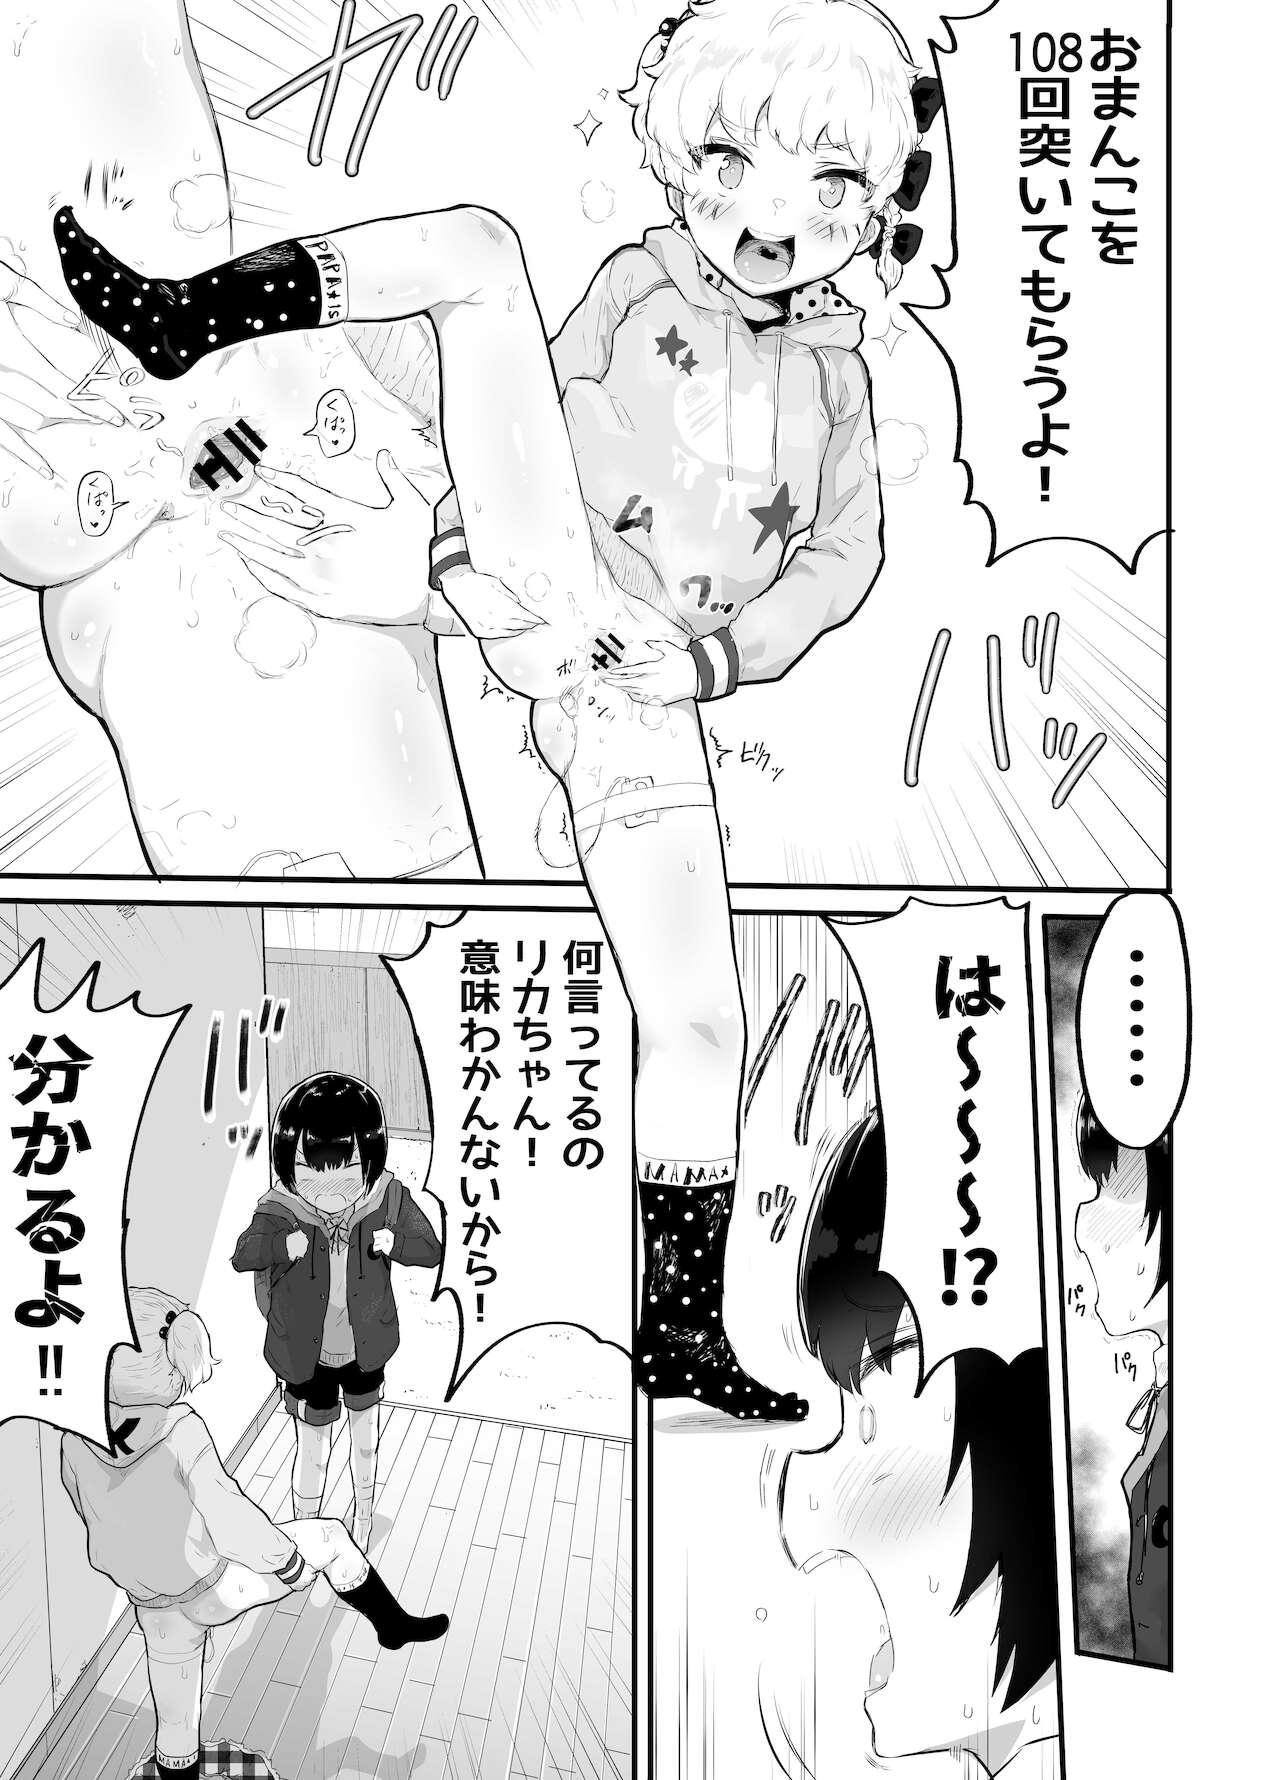 Puta Oomisoka ni Omanko 108-kai Tsuku dake no Hon Masturbation - Page 5